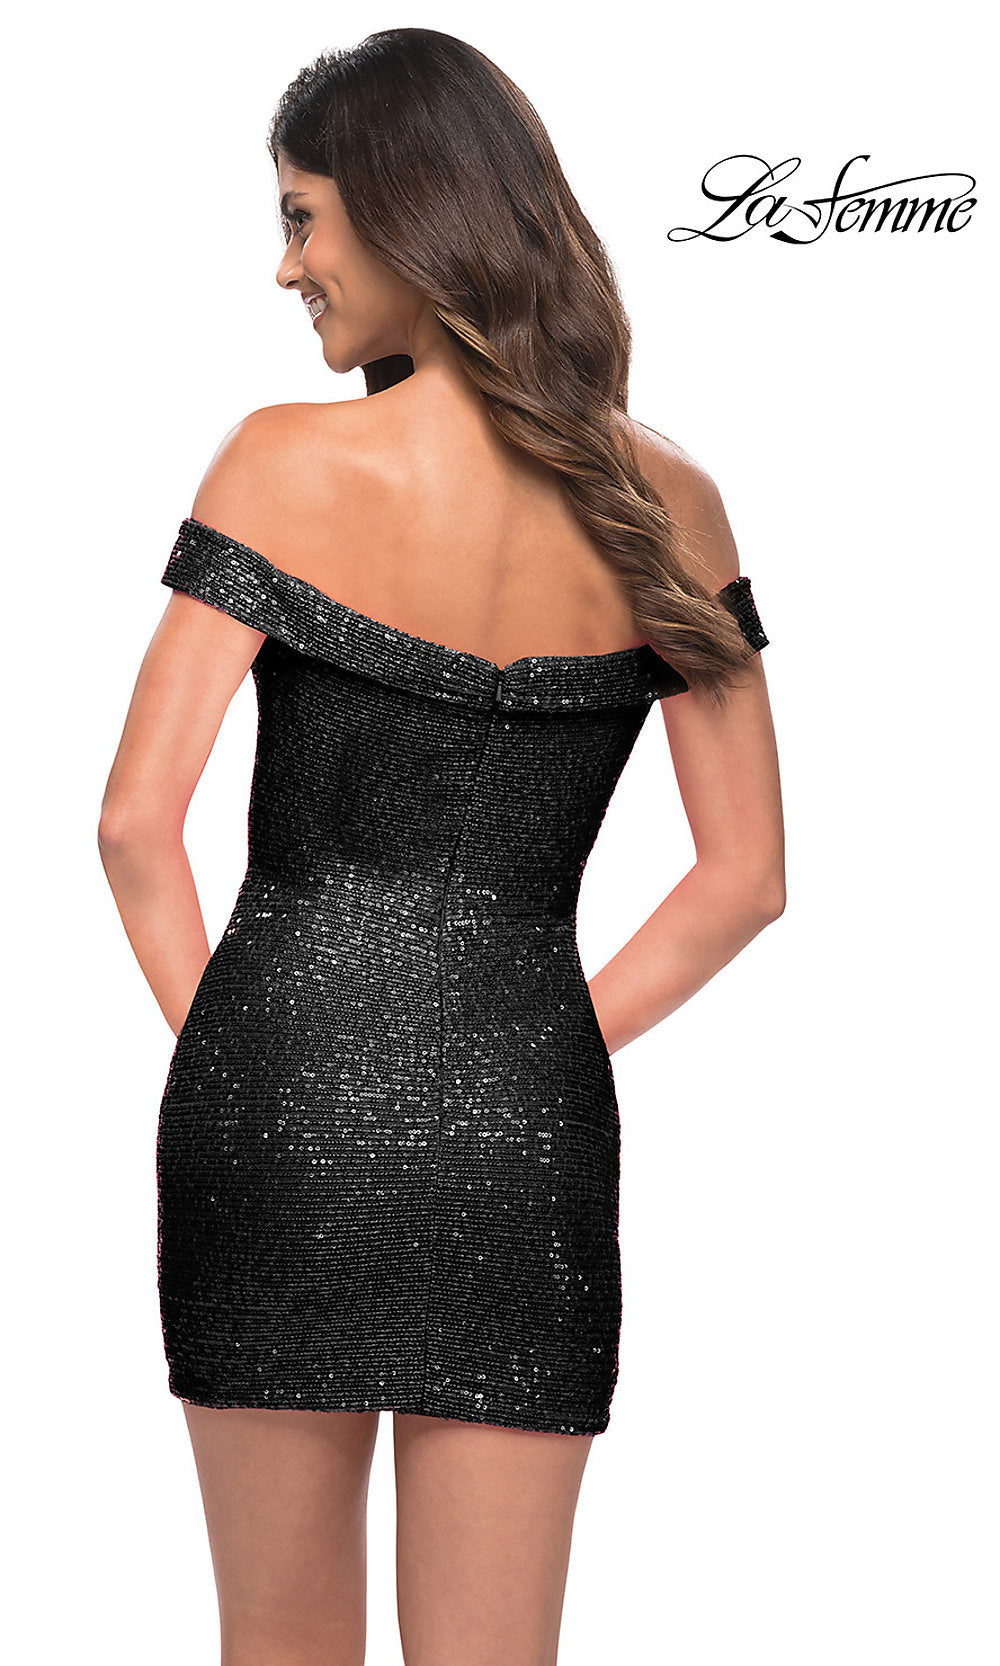  La Femme Off-the-Shoulder Short Black Sequin Dress